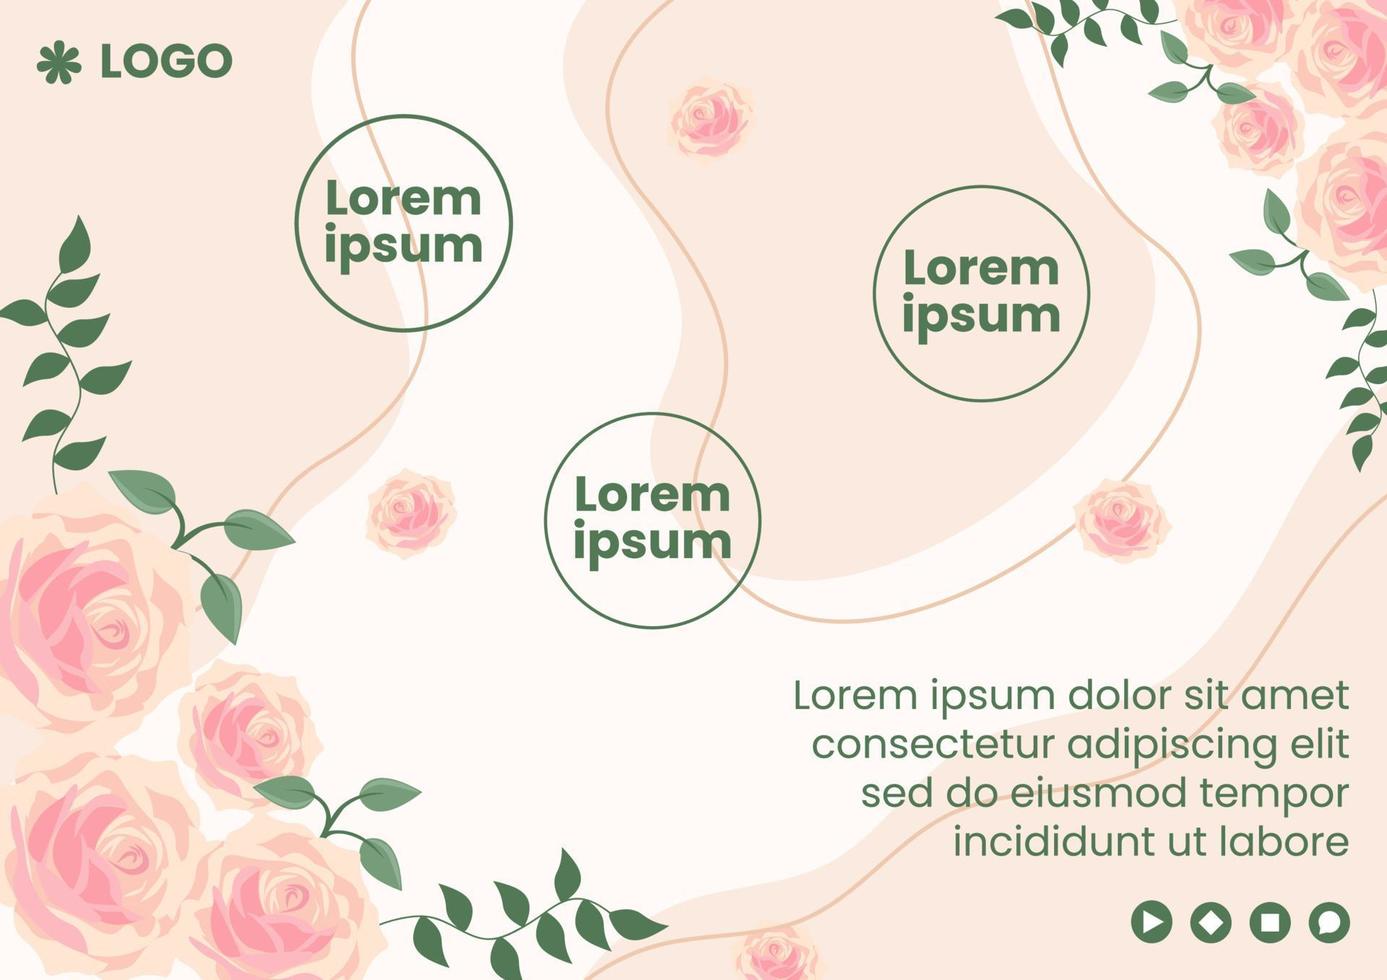 venta de primavera con flor flores plantilla de folleto diseño plano ilustración editable de fondo cuadrado adecuado para redes sociales o tarjeta de felicitación vector